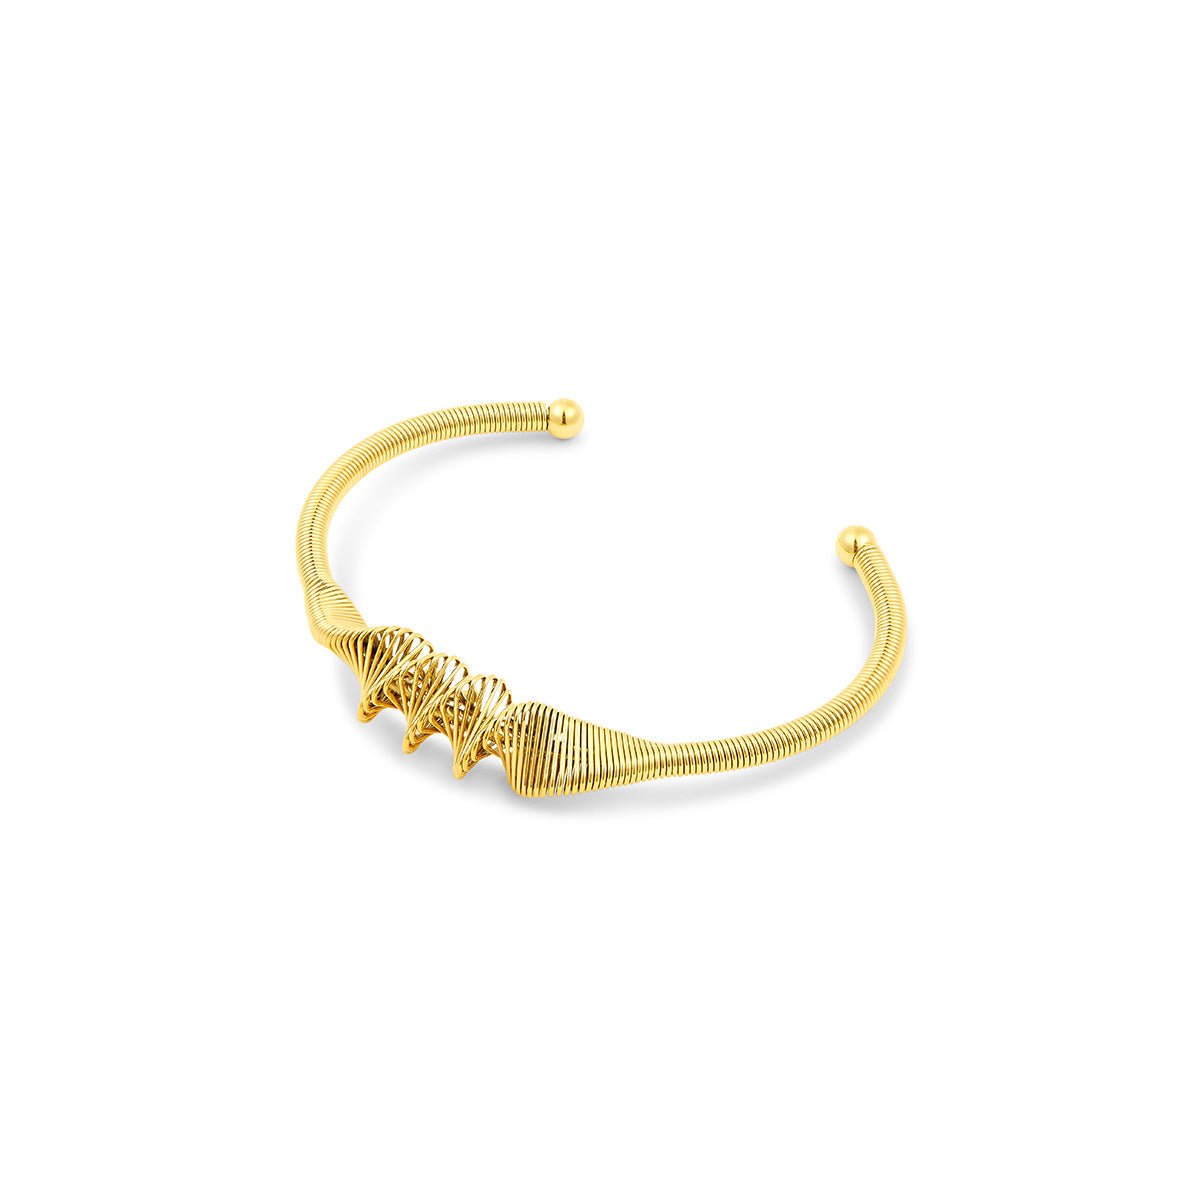 Bracelete Wave Banhado em Ouro 18K - Murano Joias